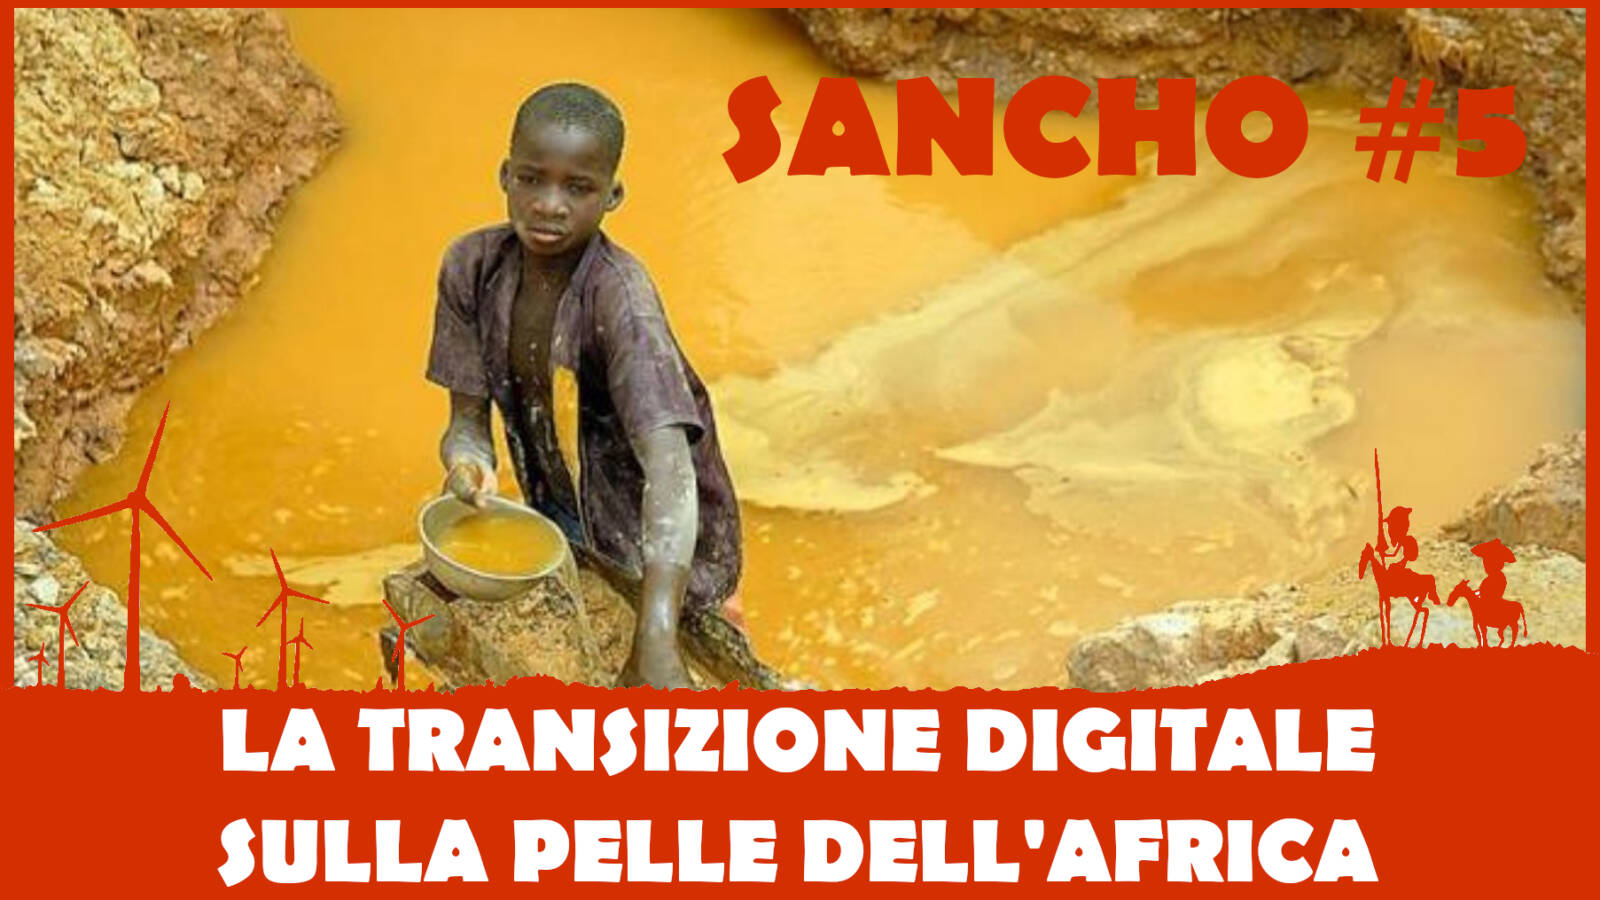 Sancho #5 – Fulvio Grimaldi – La Transizione Digitale sulla pelle dell’Africa